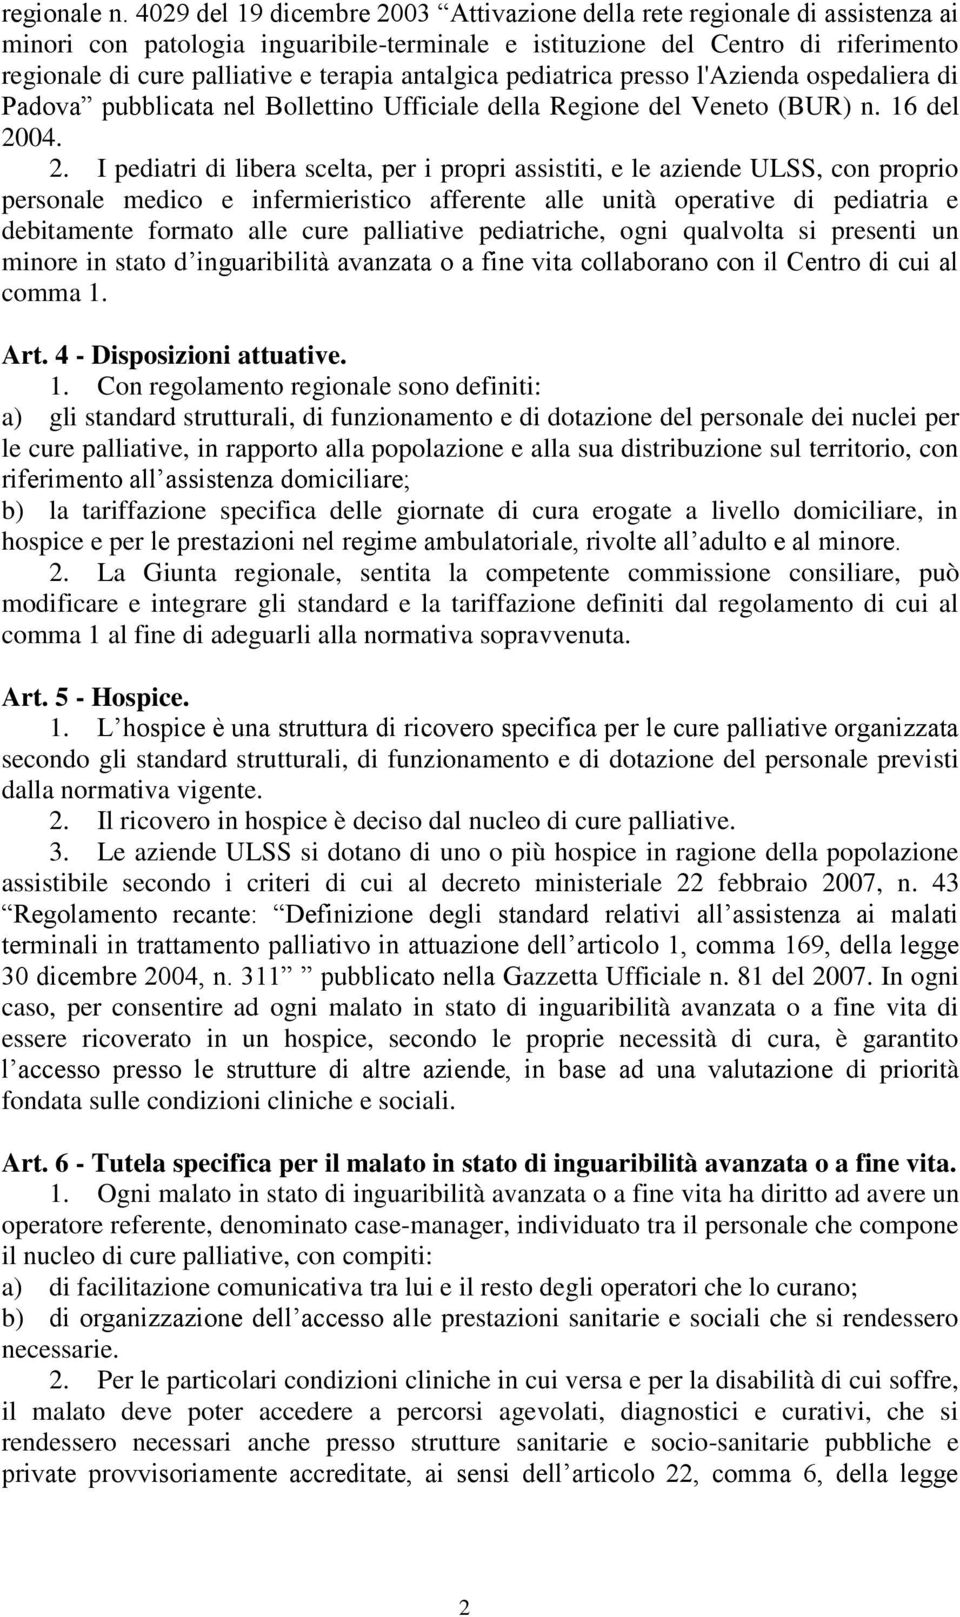 antalgica pediatrica presso l'azienda ospedaliera di Padova pubblicata nel Bollettino Ufficiale della Regione del Veneto (BUR) n. 16 del 20